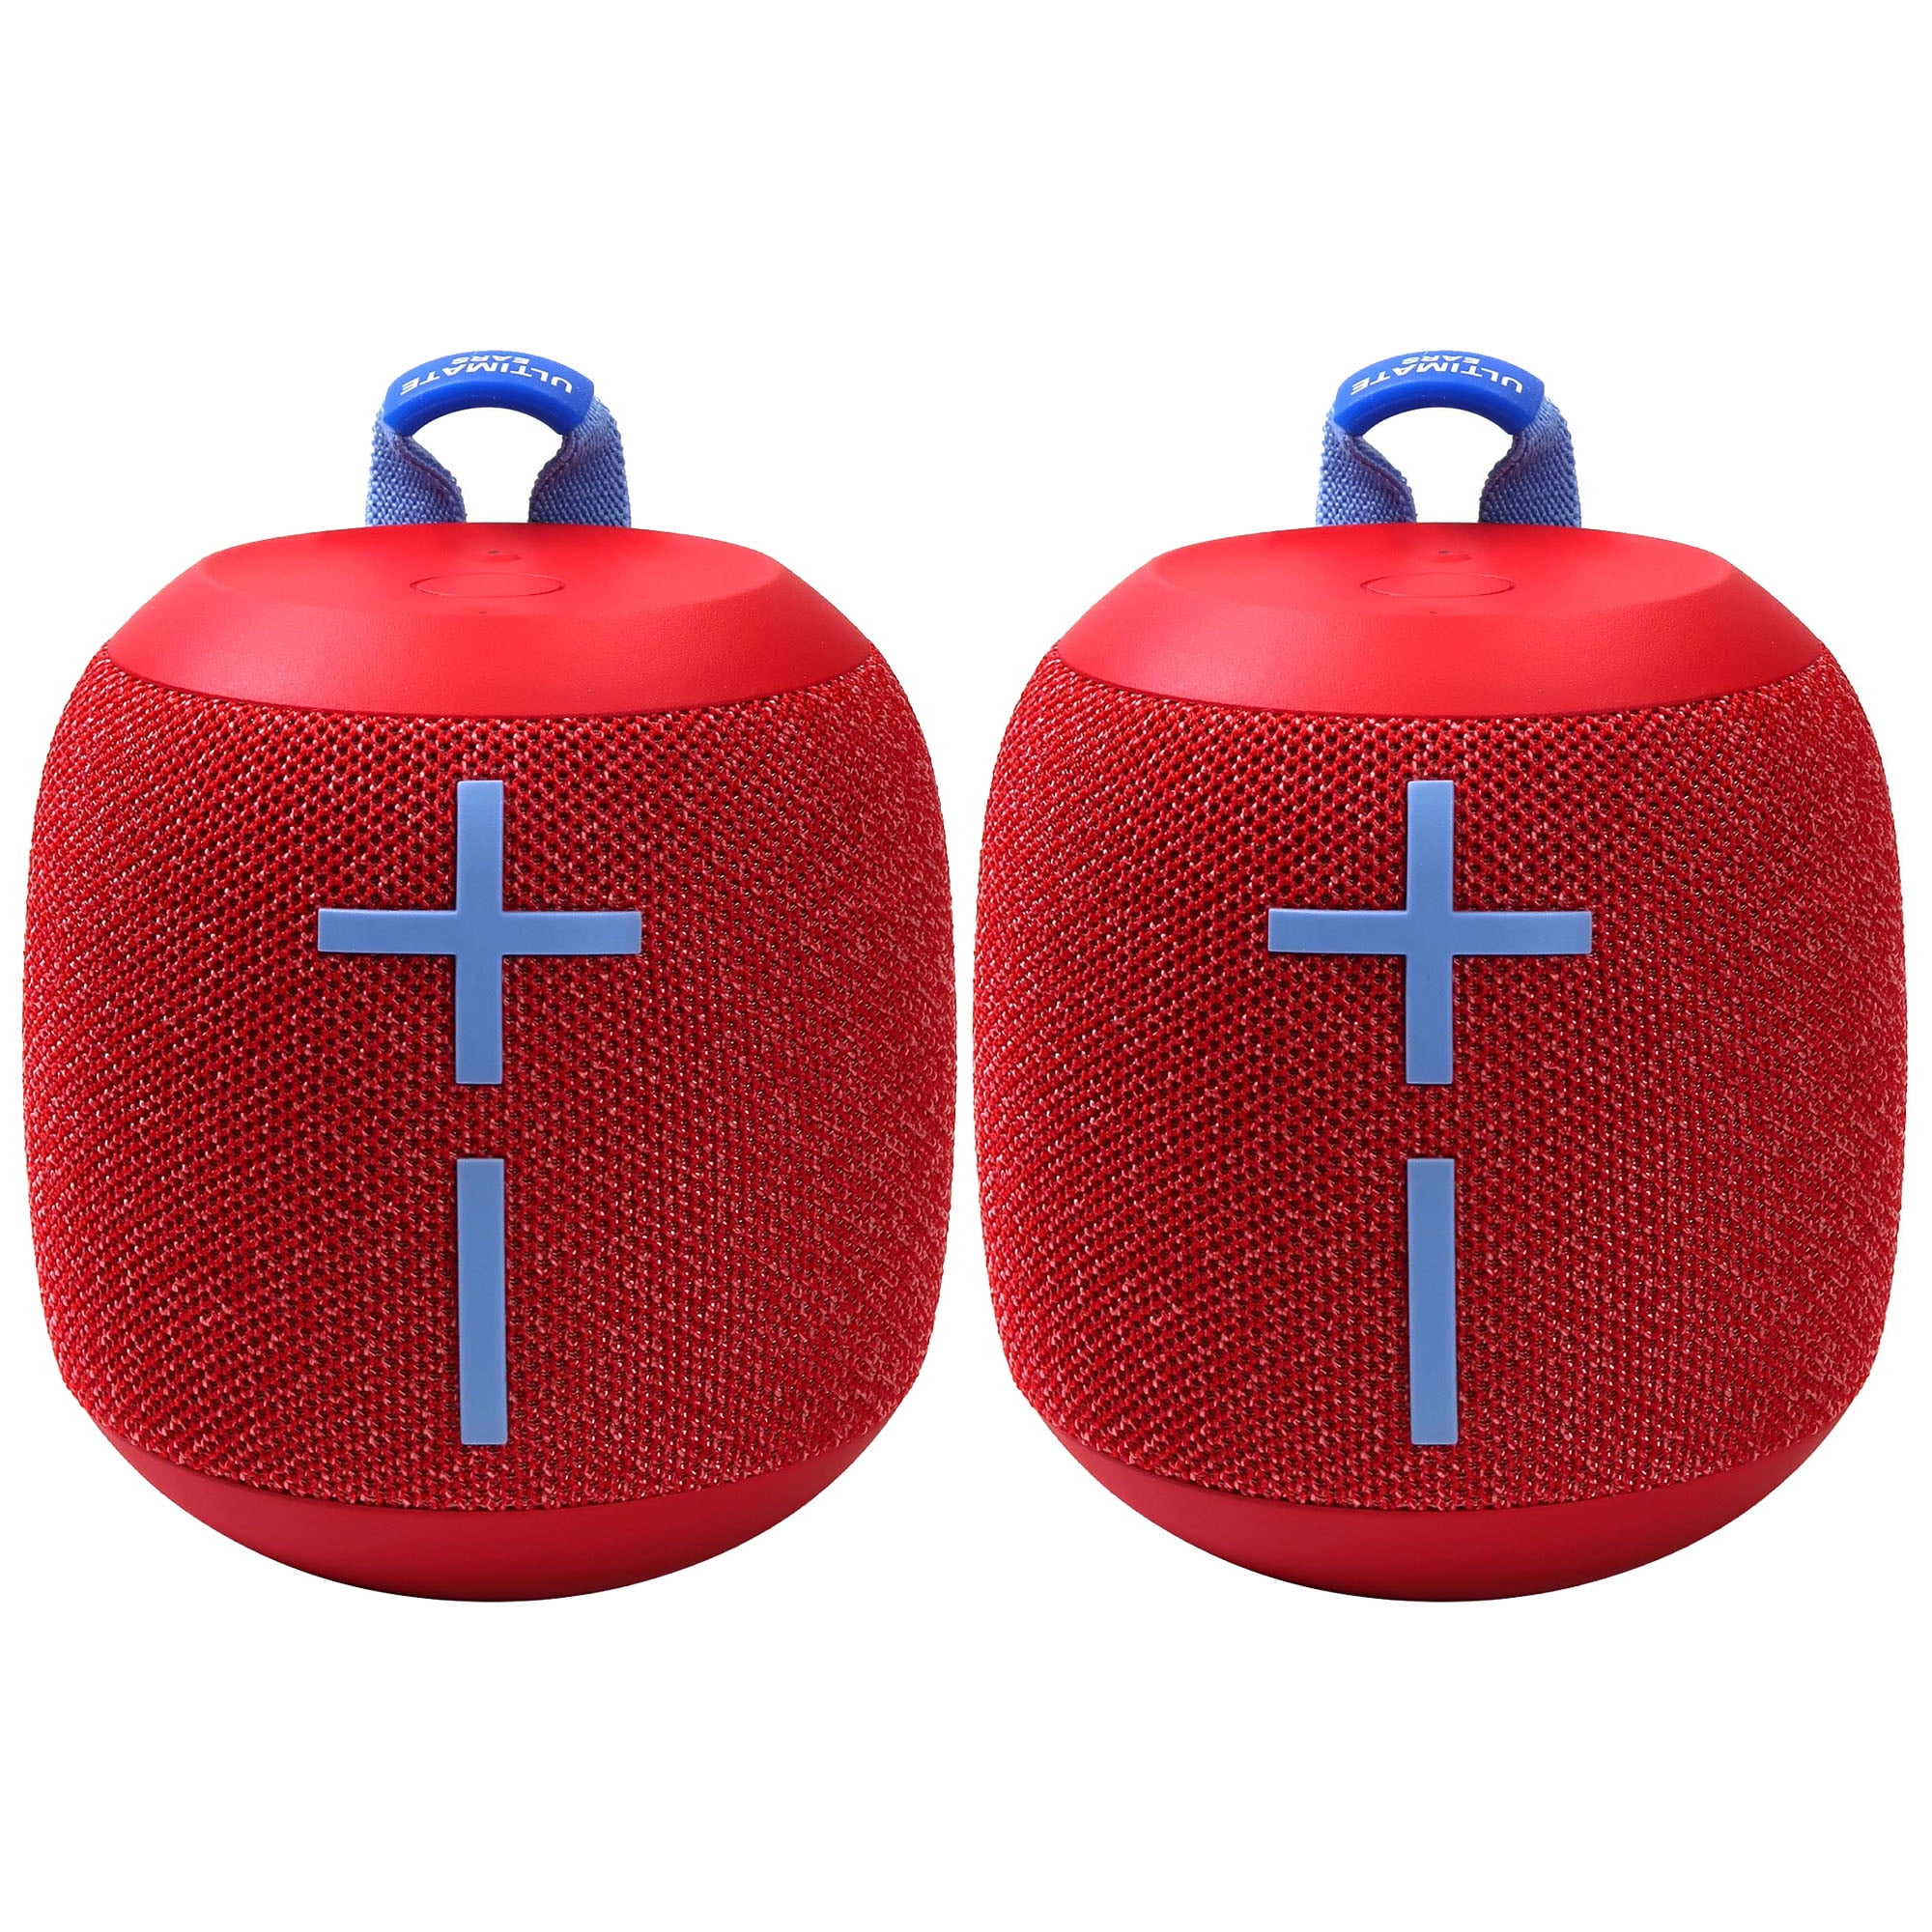 Ultimate Ears WONDERBOOM 2 Portable Bluetooth Speaker (Radical Red)  REFURBISHED